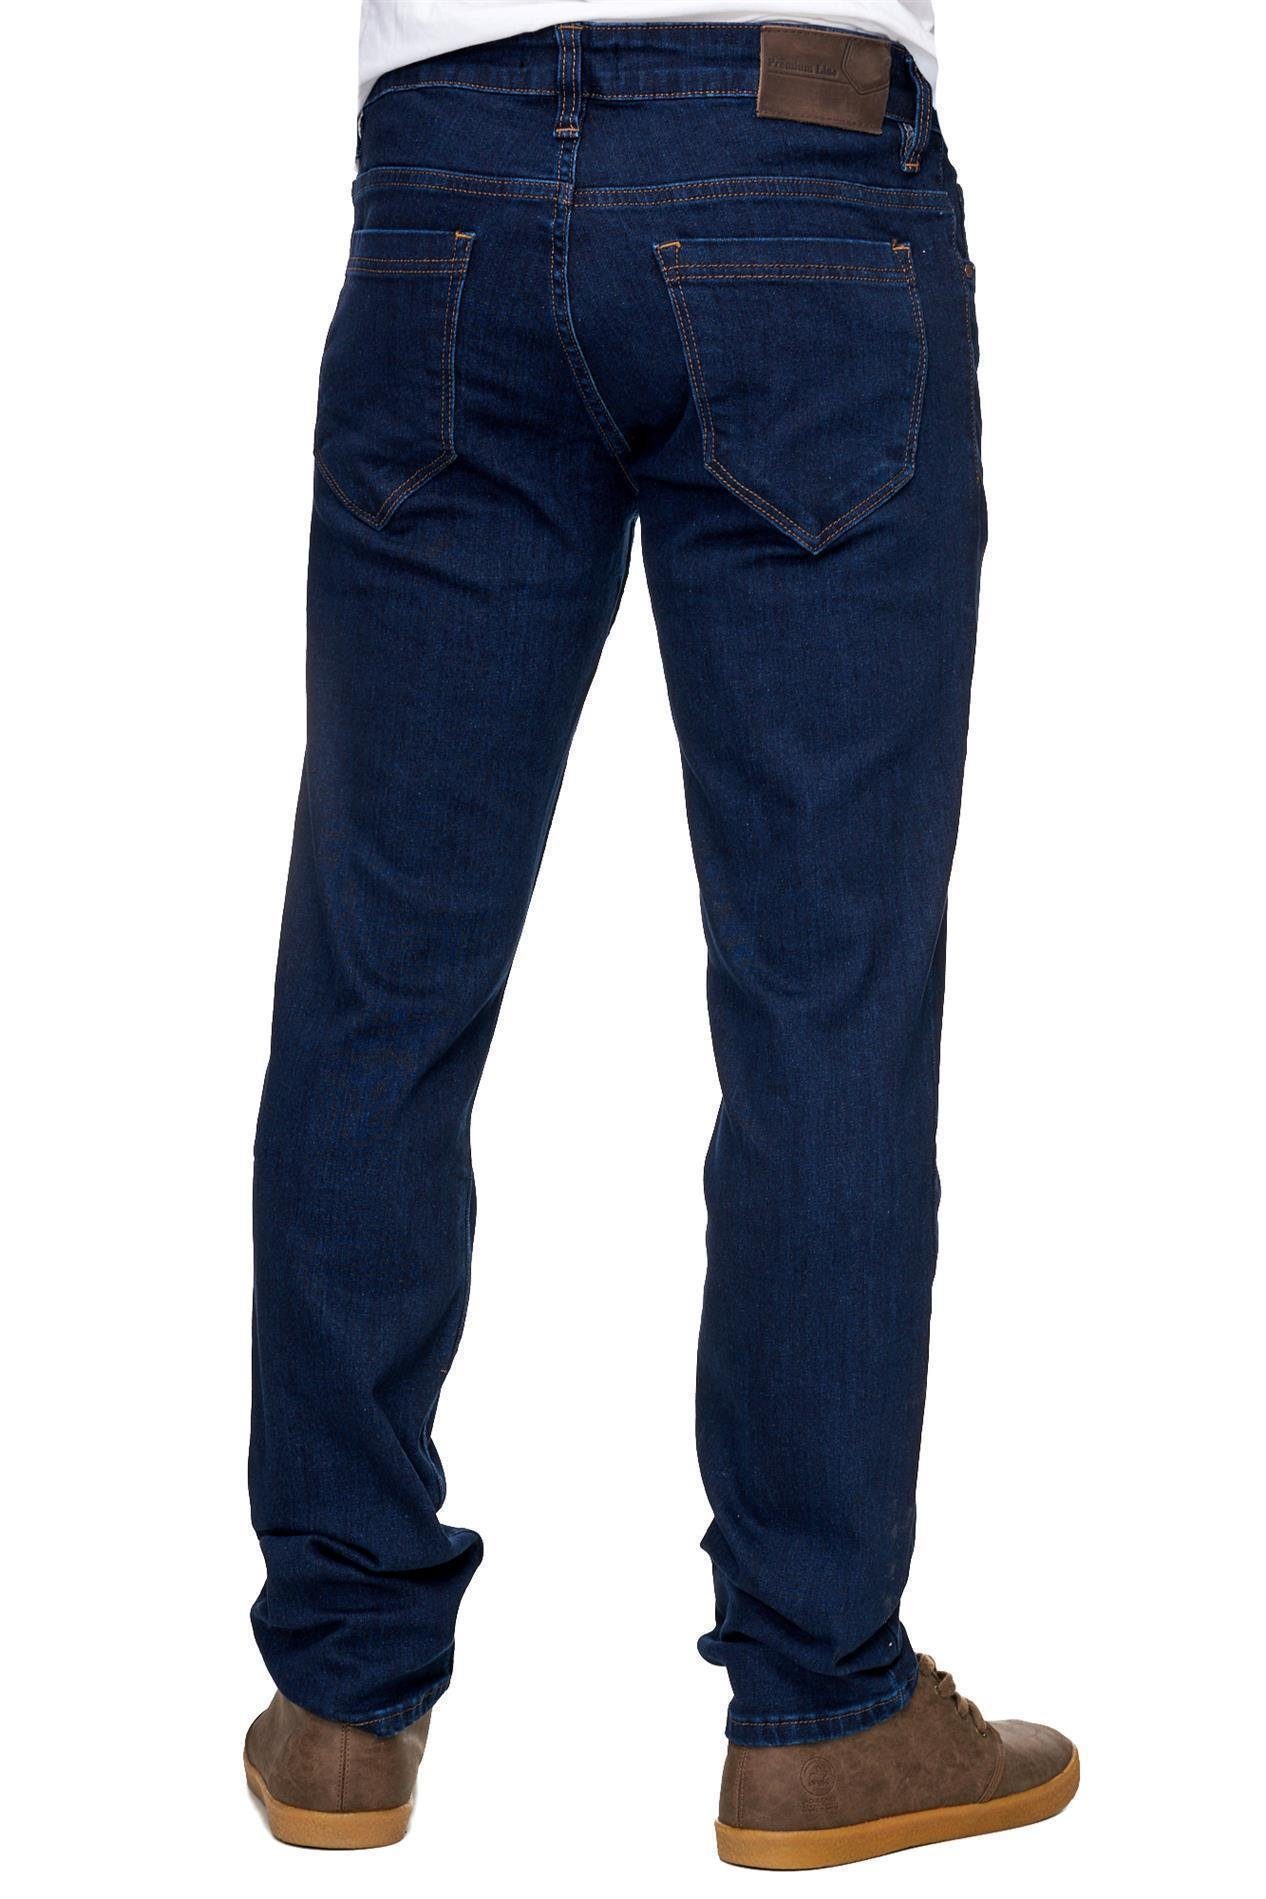 Reslad Stretch-Jeans Reslad Jeans-Herren Slim Jeans-Hose Stretch Stretch-Denim Style Slim dunkelblau Basic Jeans-Hose Fit Fit